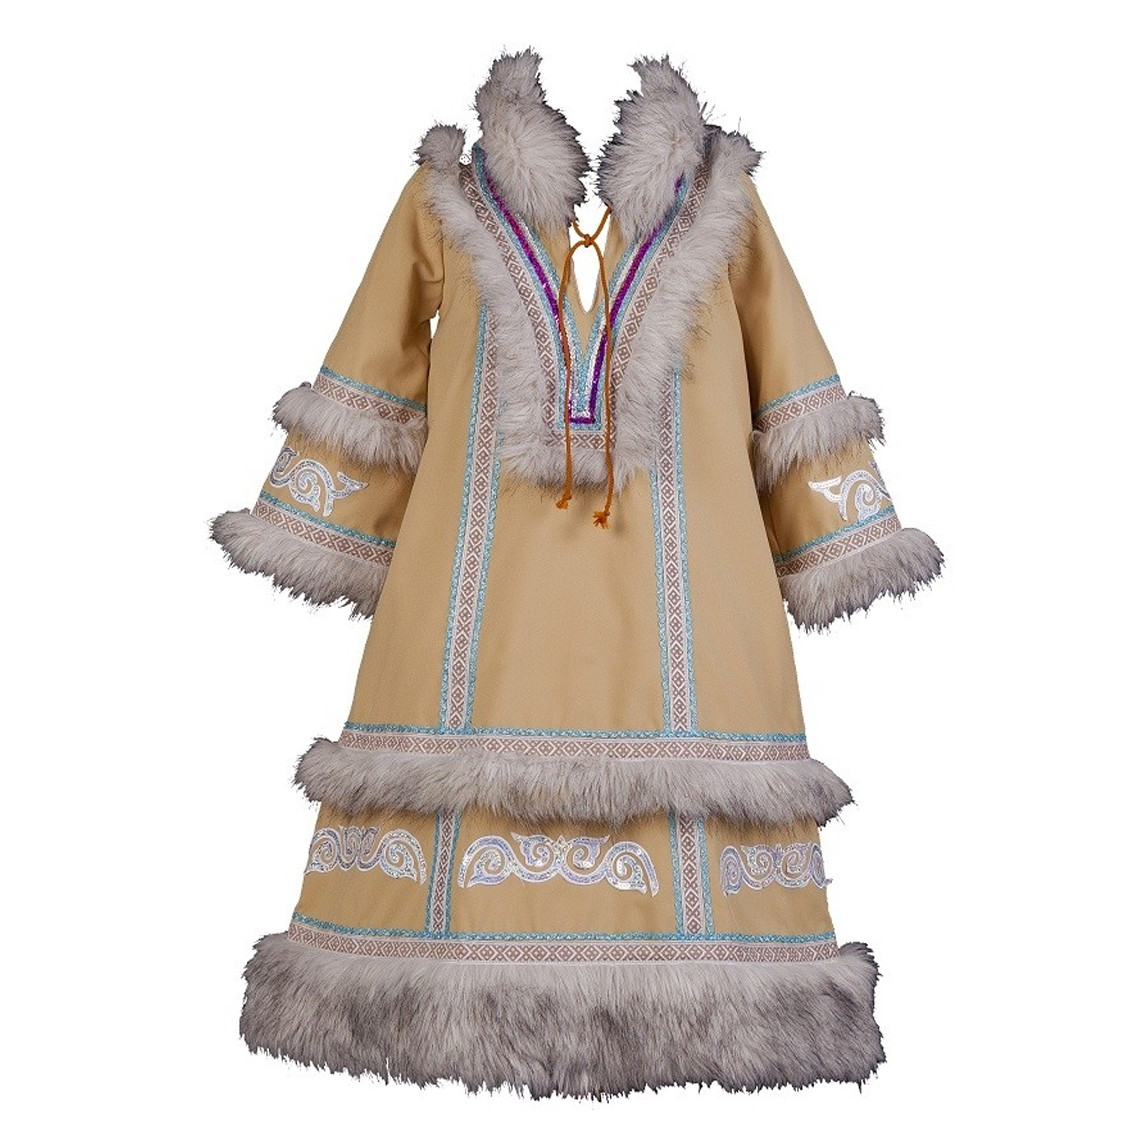 Национальный костюм Чукотки